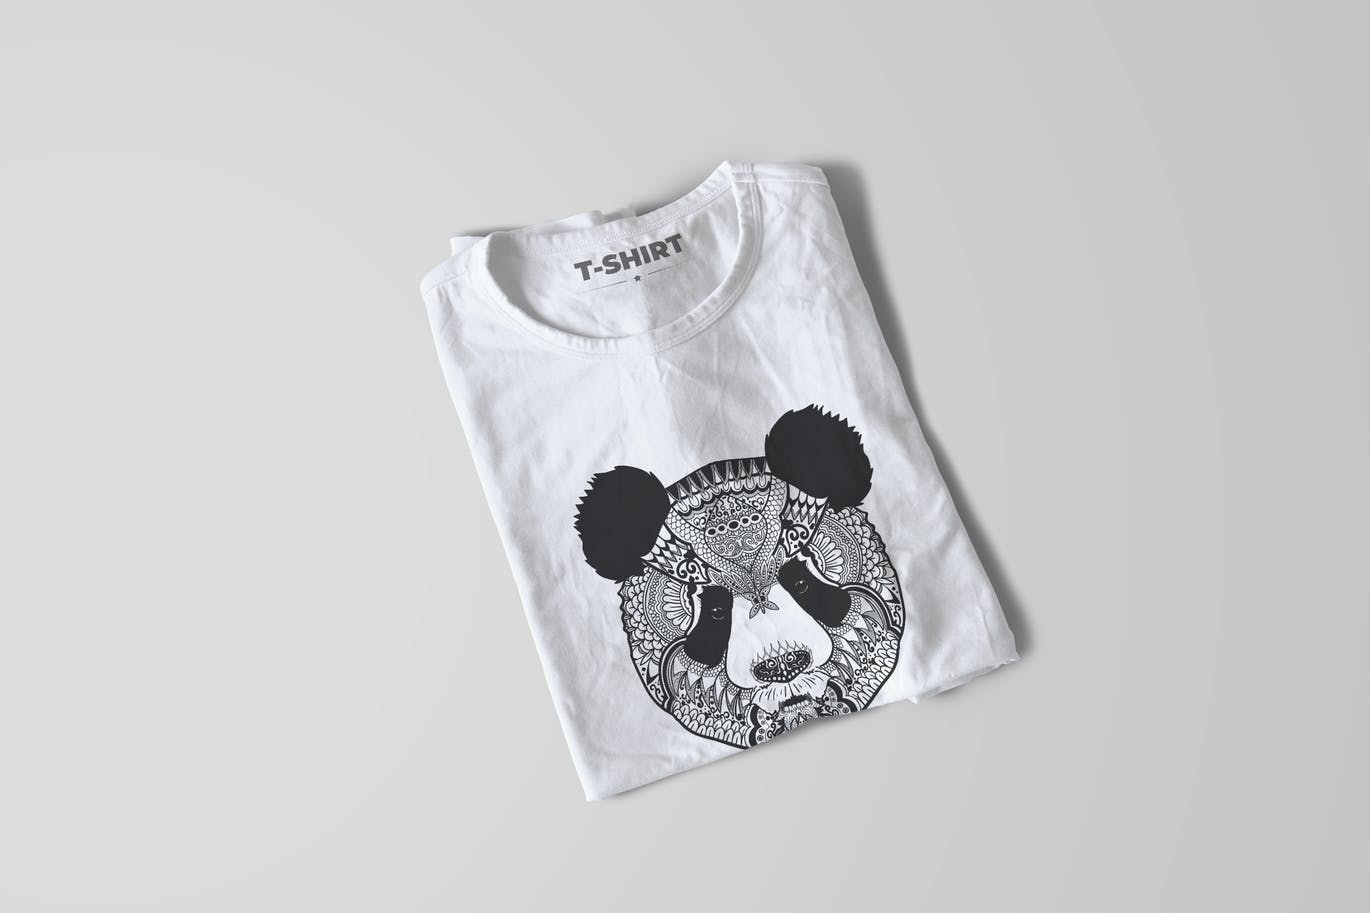 熊猫-曼陀罗花手绘T恤印花图案设计矢量插画第一素材精选素材 Panda Mandala T-shirt Design Vector Illustration插图